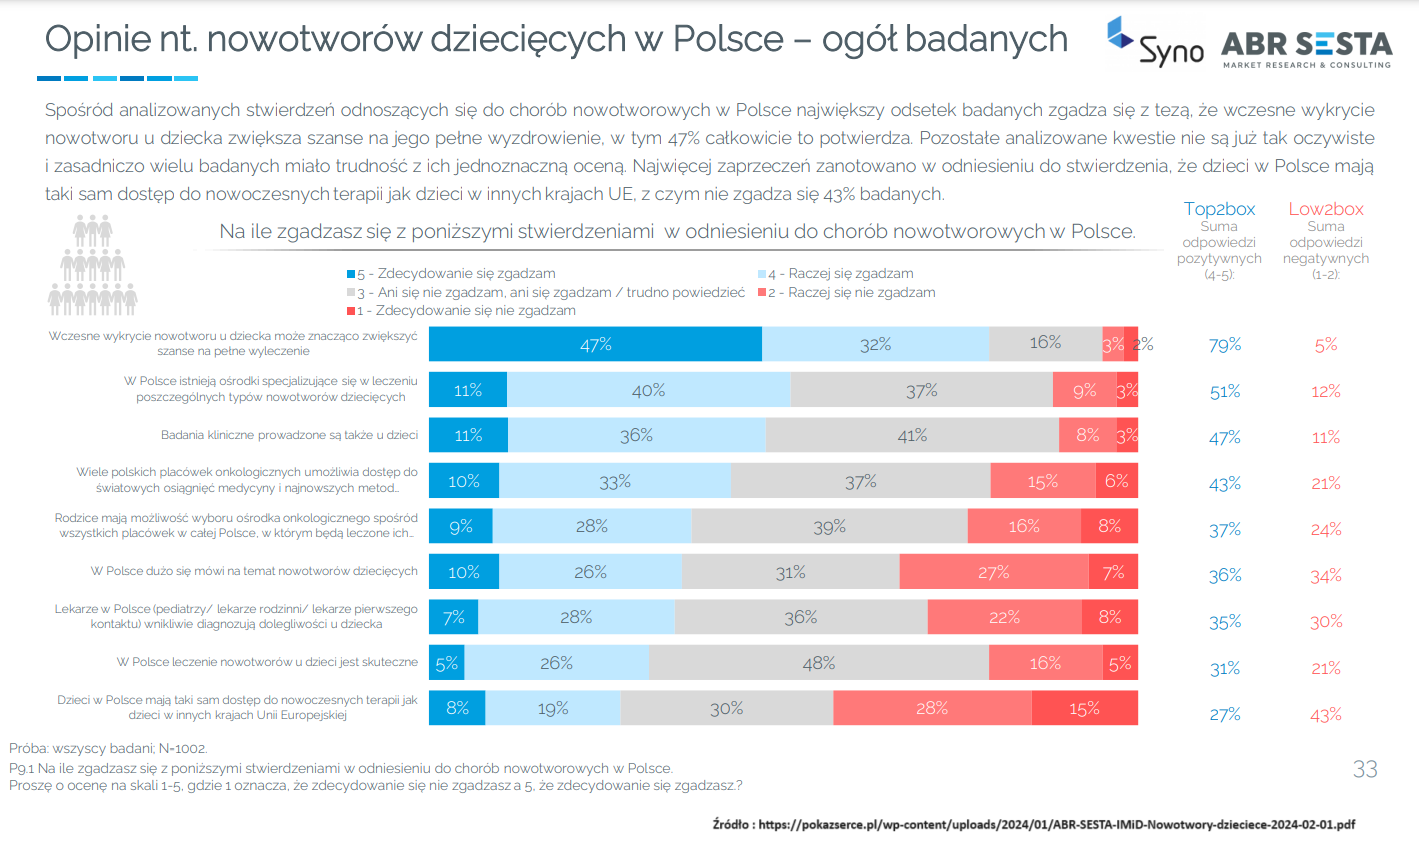 Badanie opinii publicznej na temat nowotworów dziecięcych w Polsce 